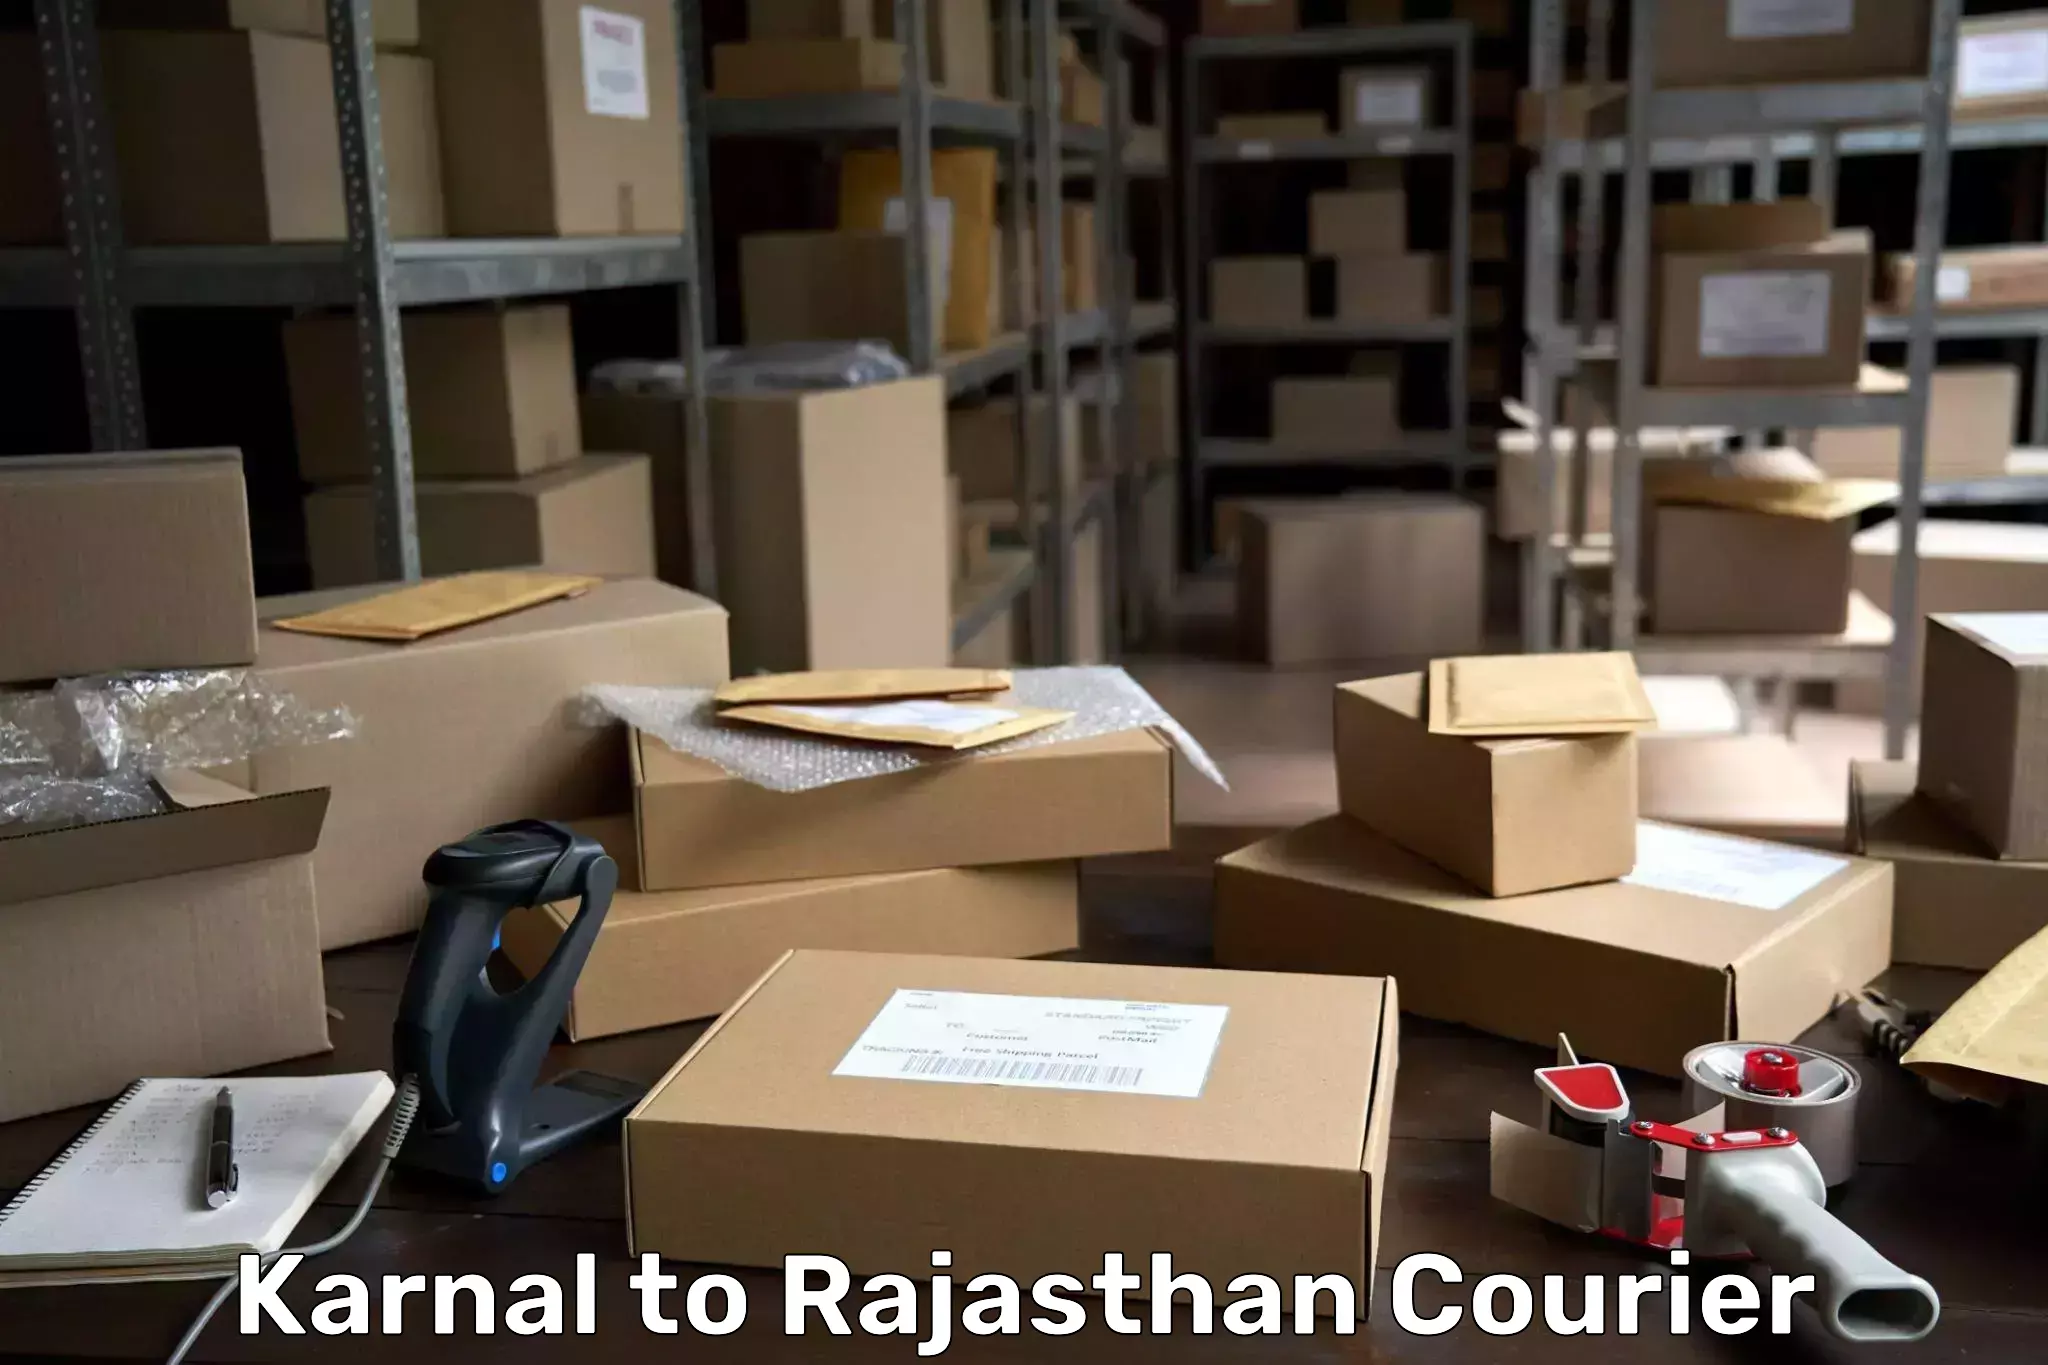 Tech-enabled shipping Karnal to Jaipur